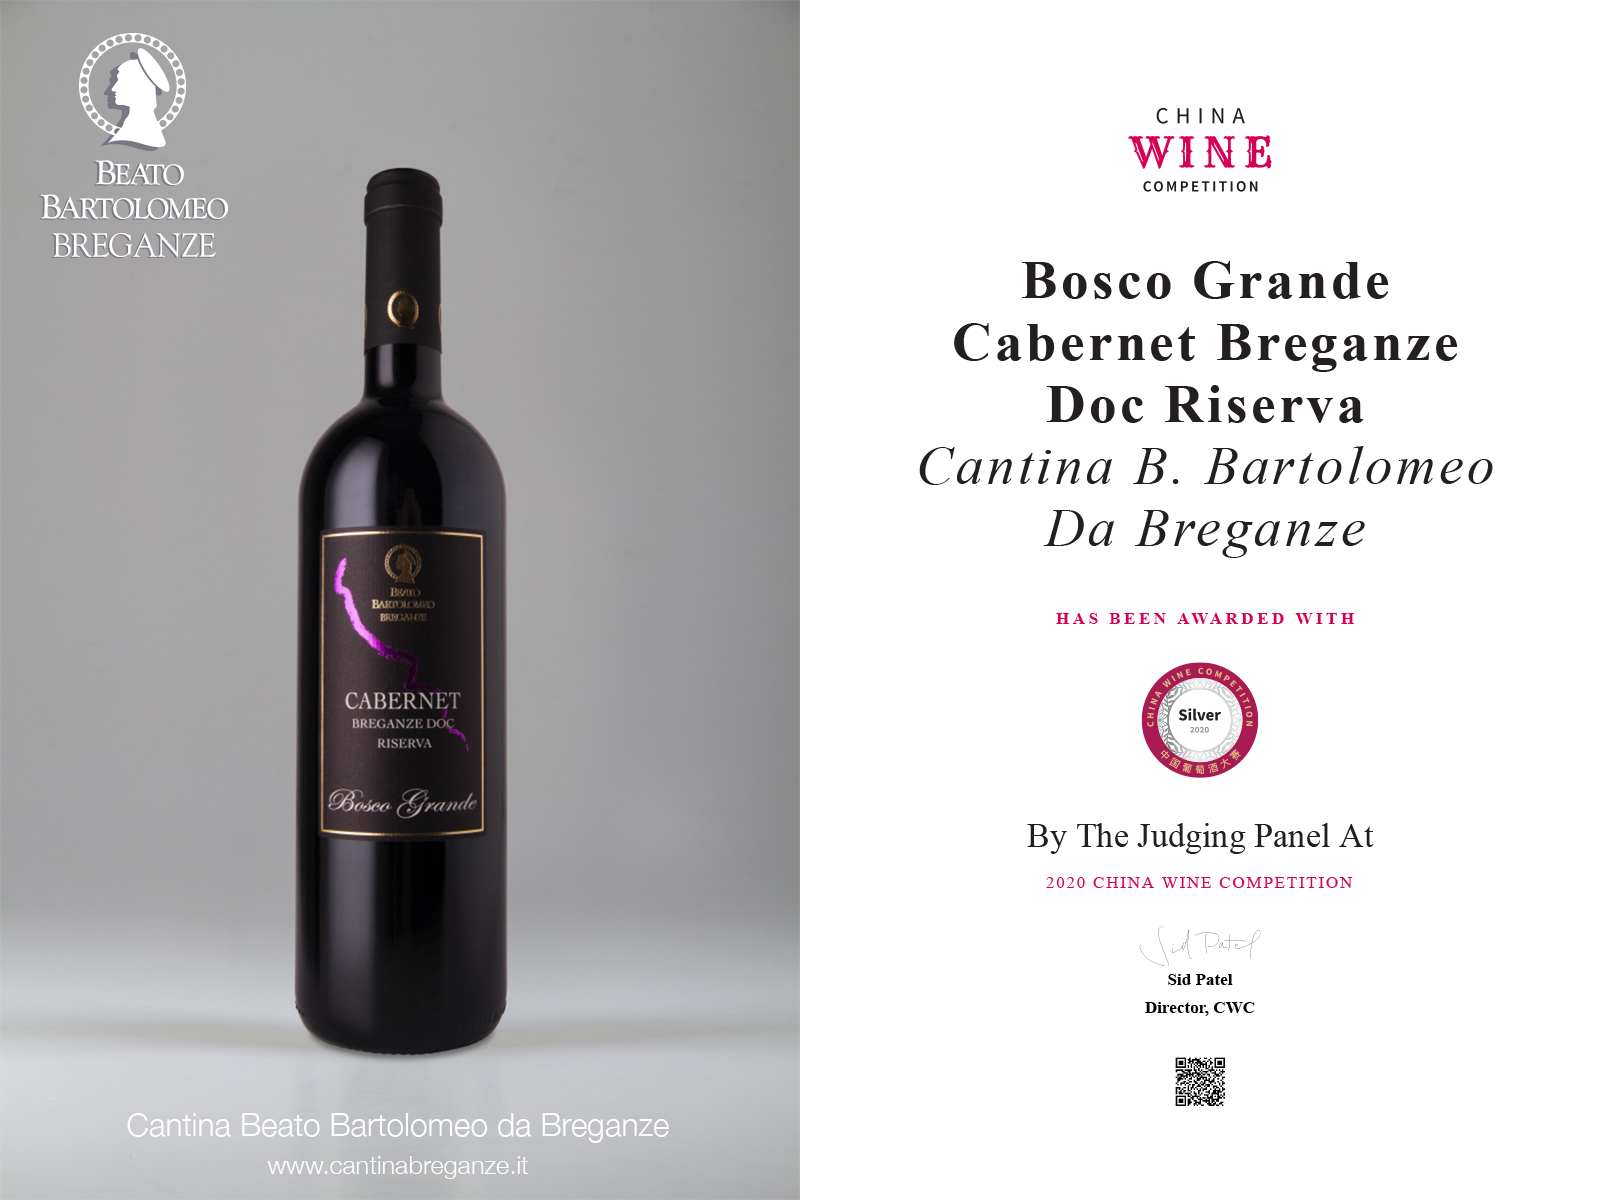 Cabernet Breganze Doc Riserva “Bosco Grande” China Wine Competition 2020